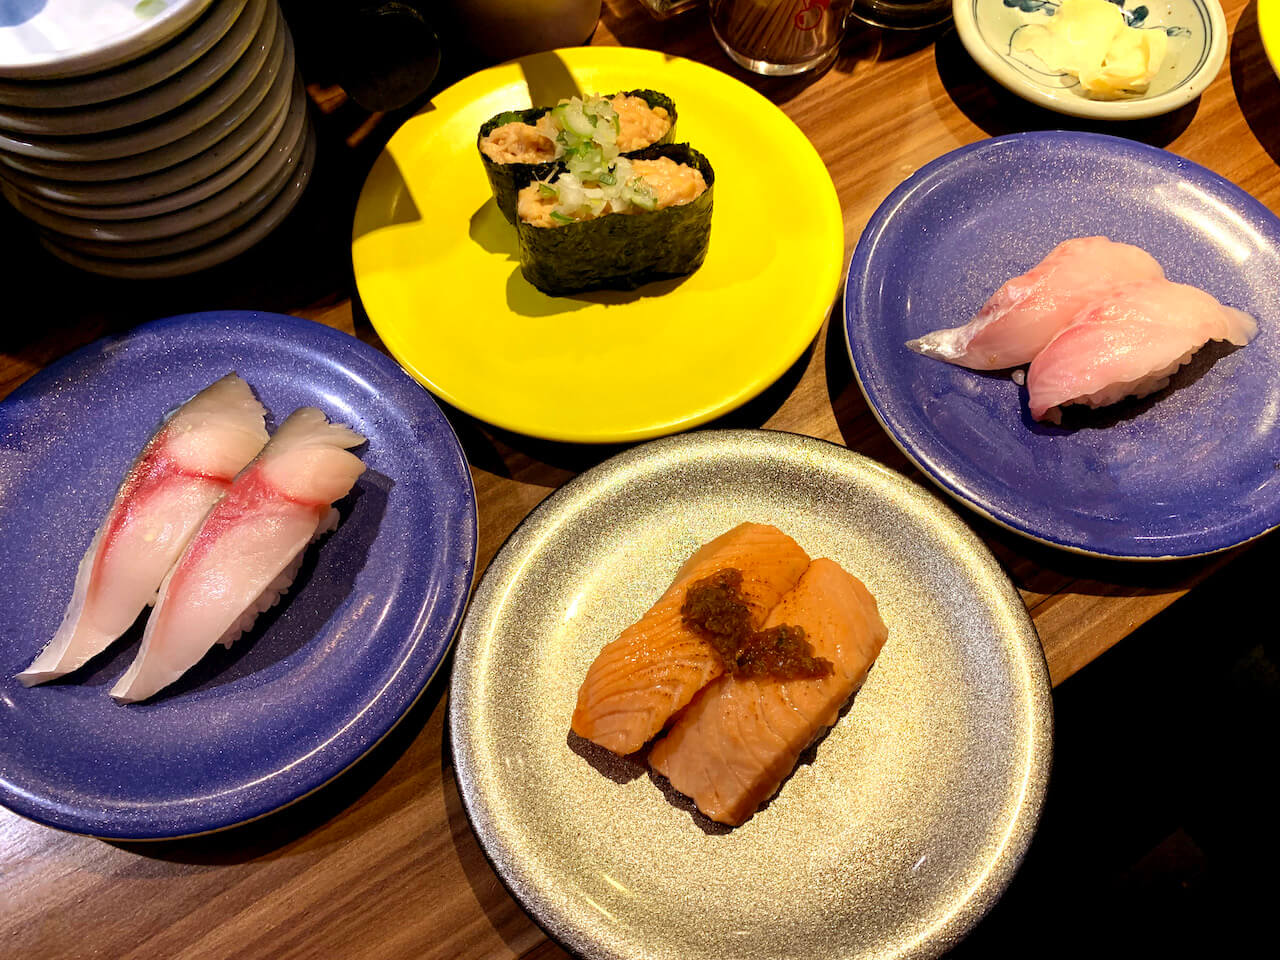 Enjoy Conveyor Belt Seafood at Kaiten Sushi Pasaru